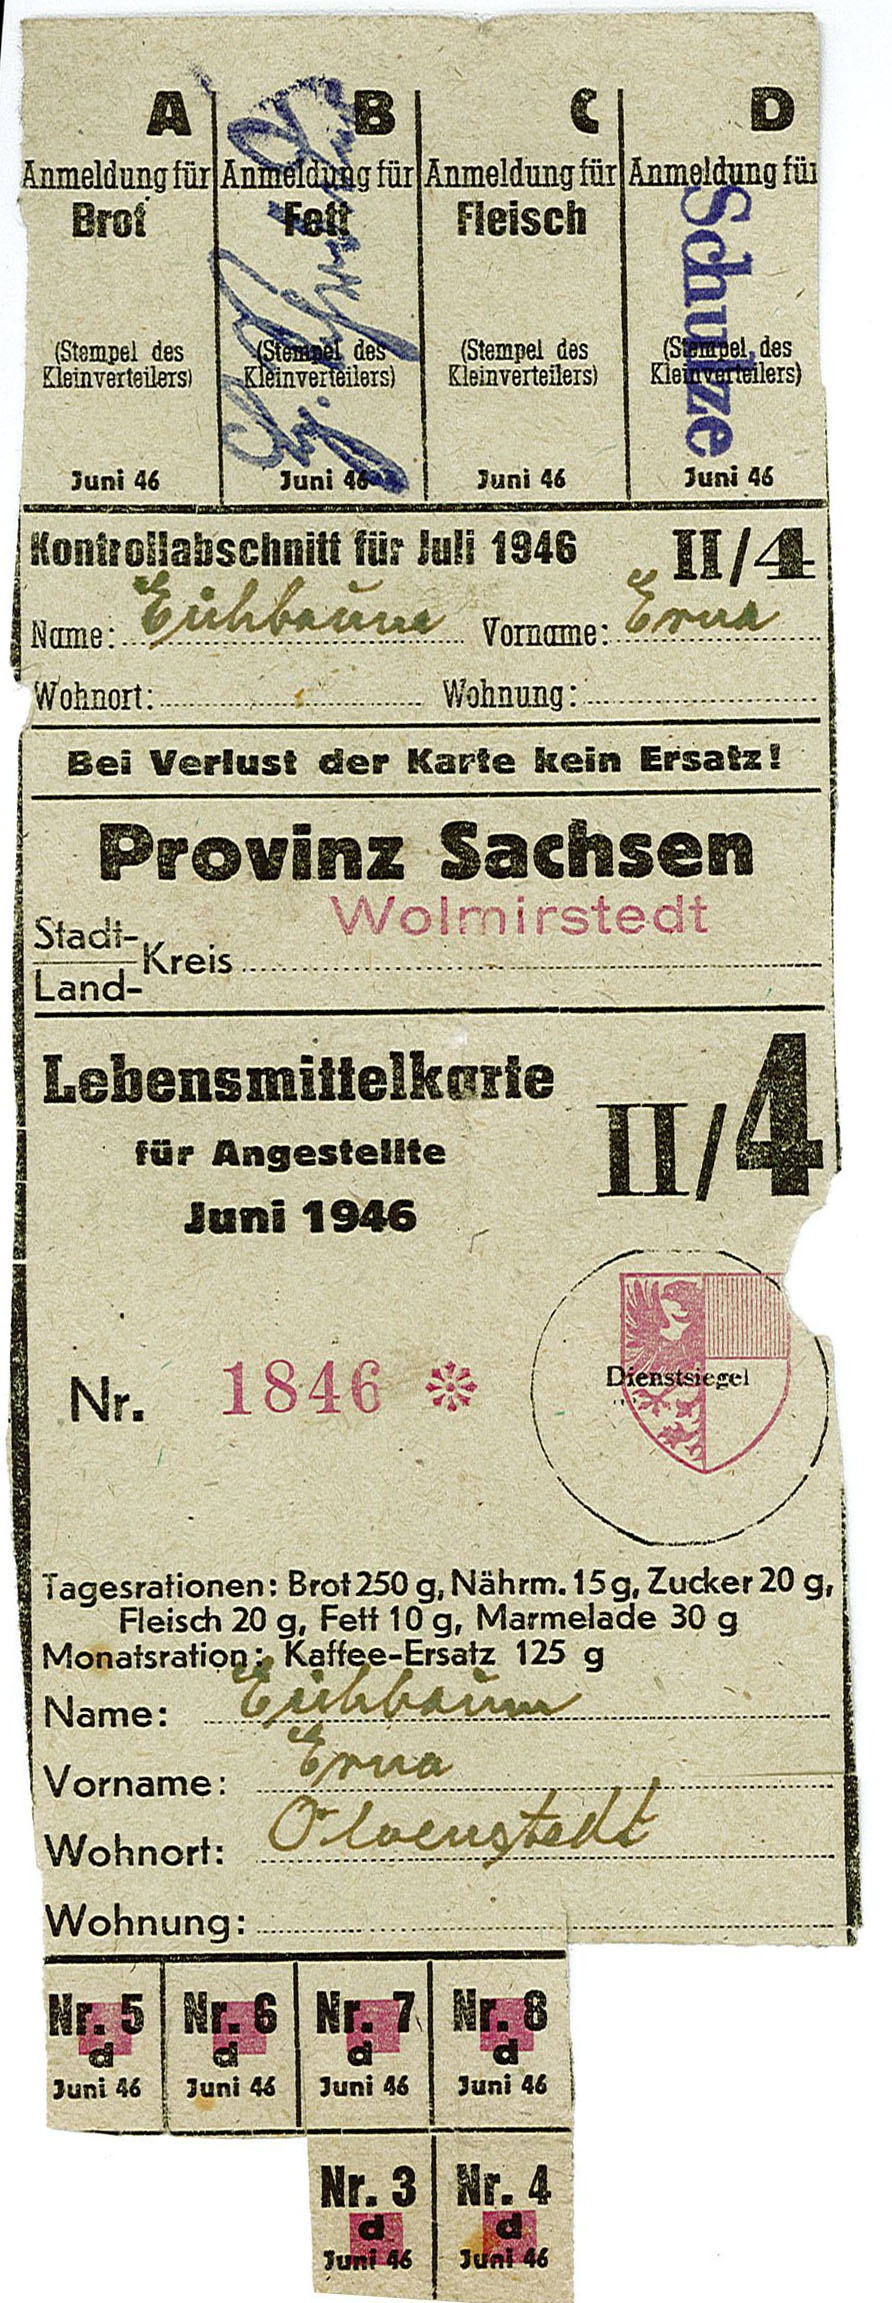 Lebensmittelkarte: für Angestellte, Juni 1946 (Museum Wolmirstedt RR-F)